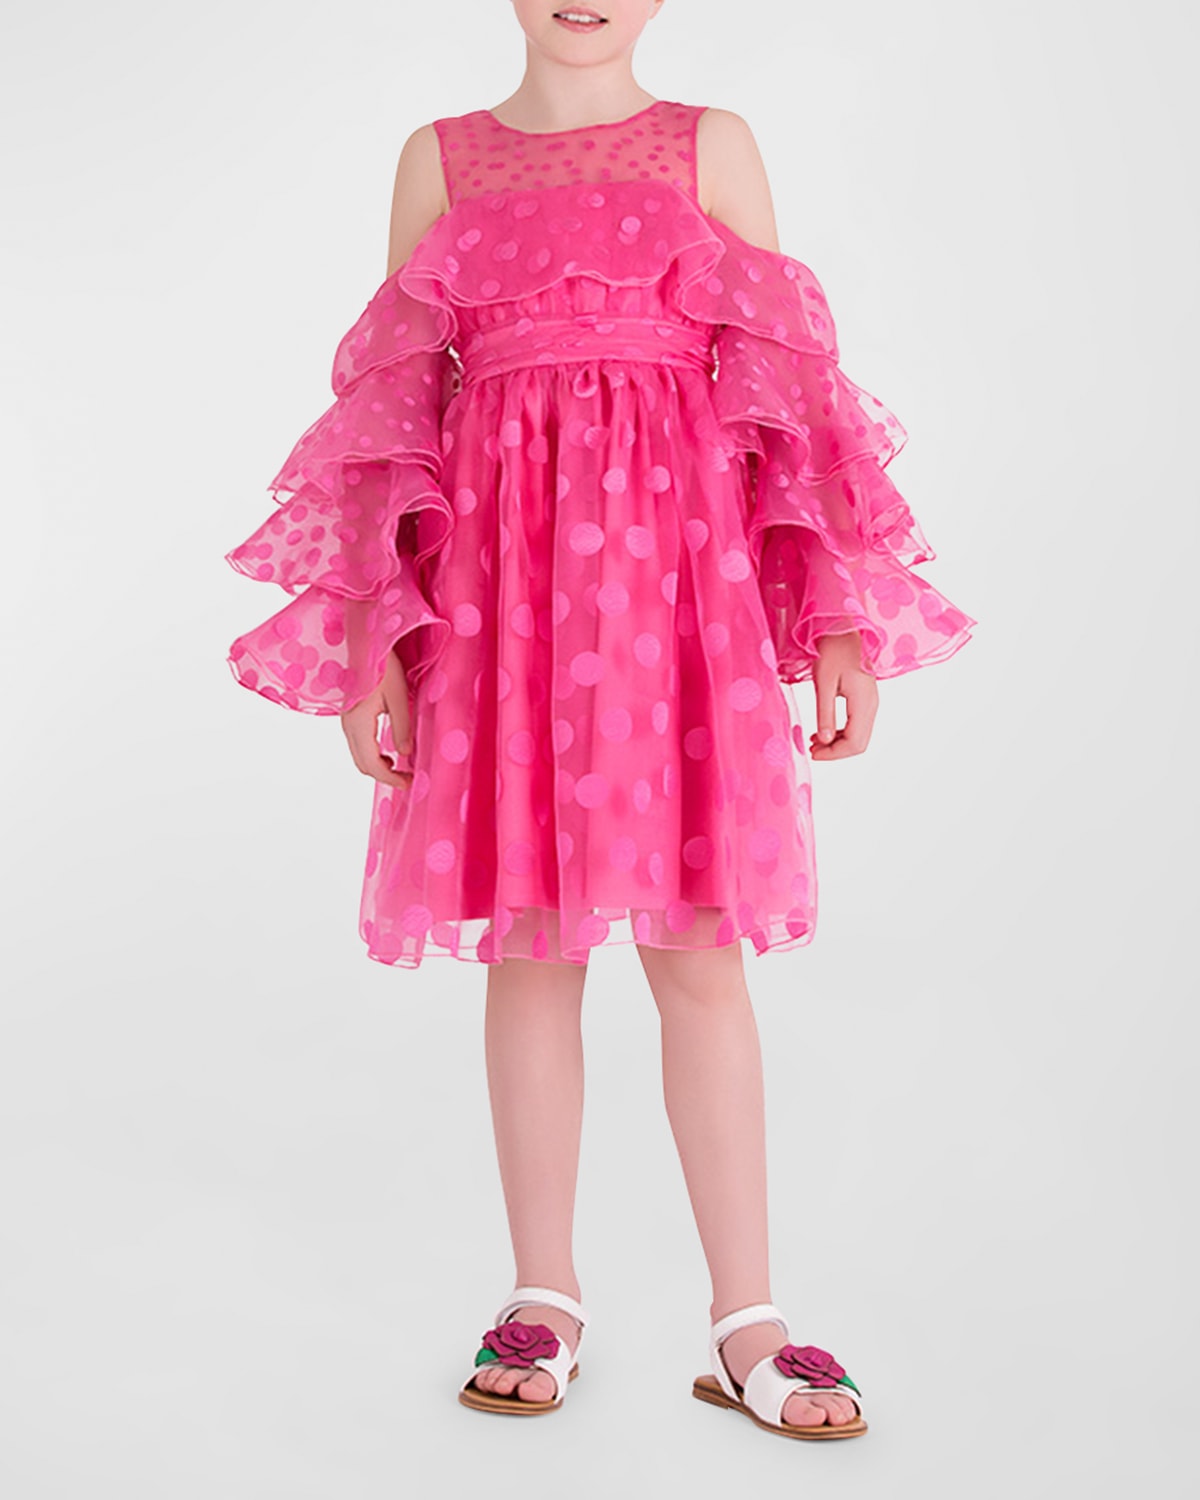 Mama Luma Kids' Girl's Polka Dot Ruffle Dress In Pink